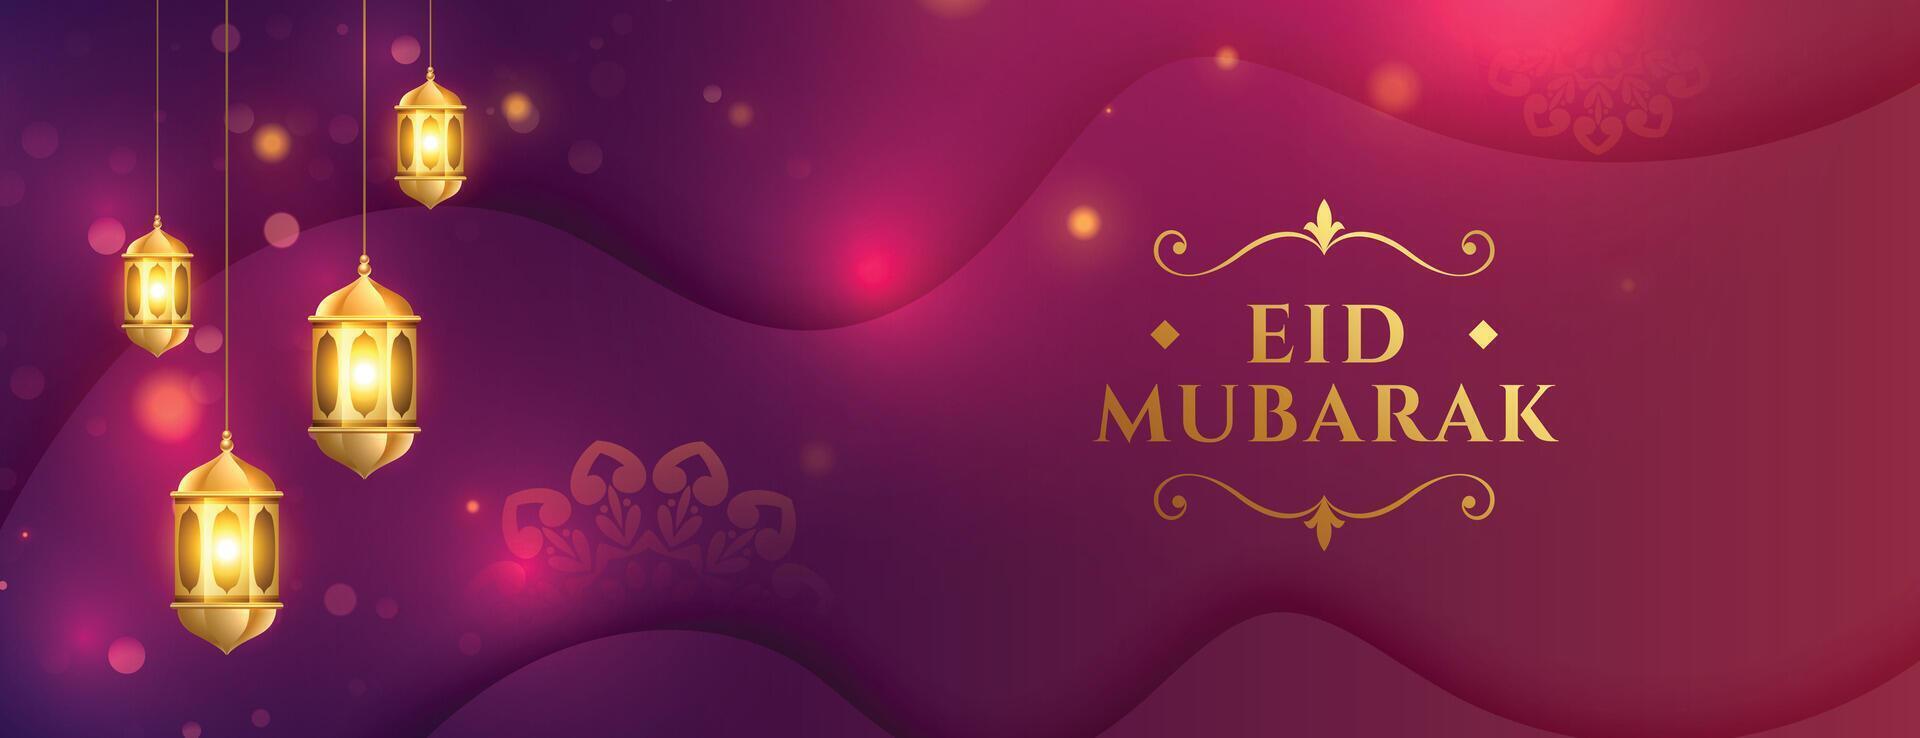 beautiful islamic festival eid mubarak wallpaper with glowing lamp vector